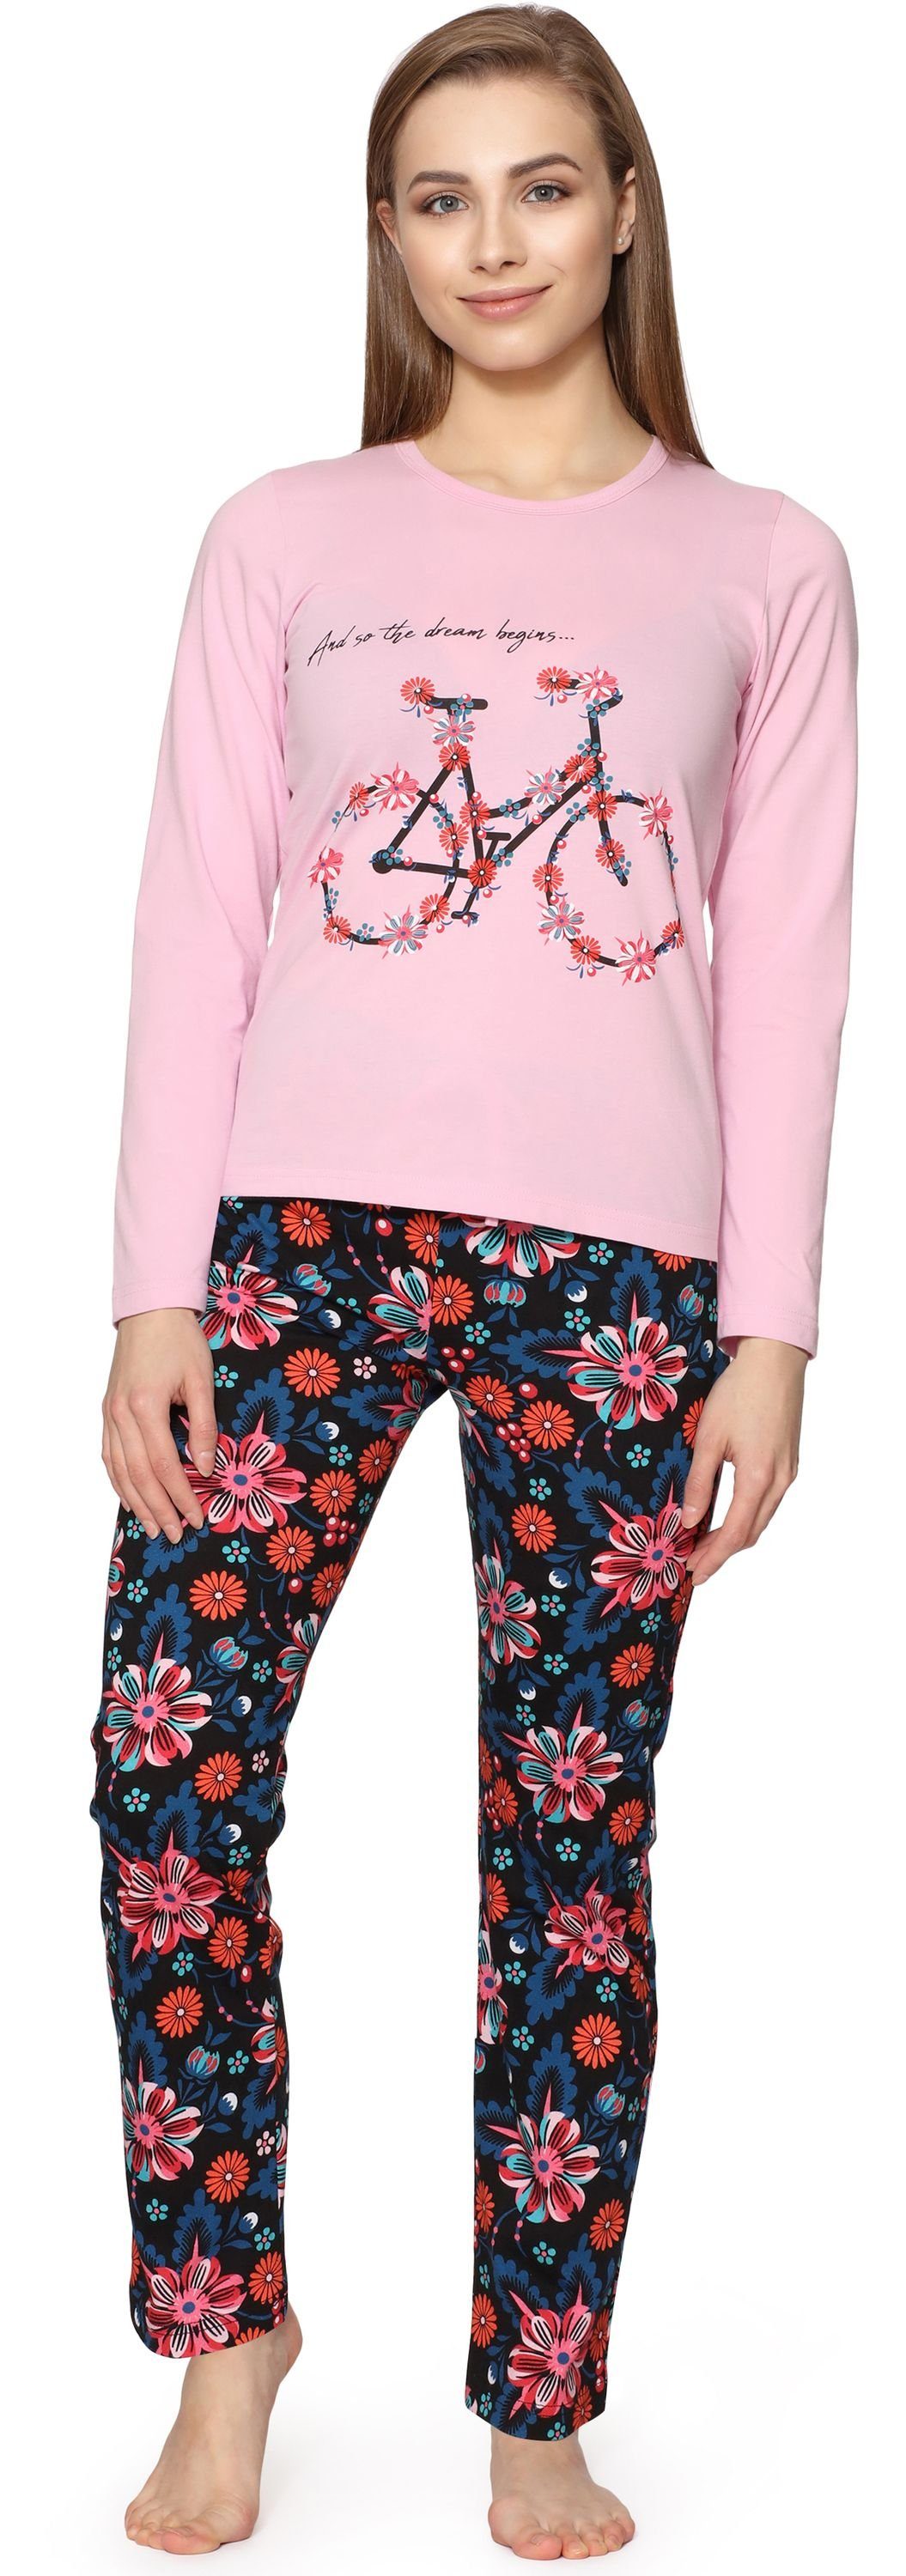 Merry Style Schlafanzug Damen Zweiteilieger Schlafanzug Pyjama Lang Winter MS10-192 Licht Rosa/Blumen2